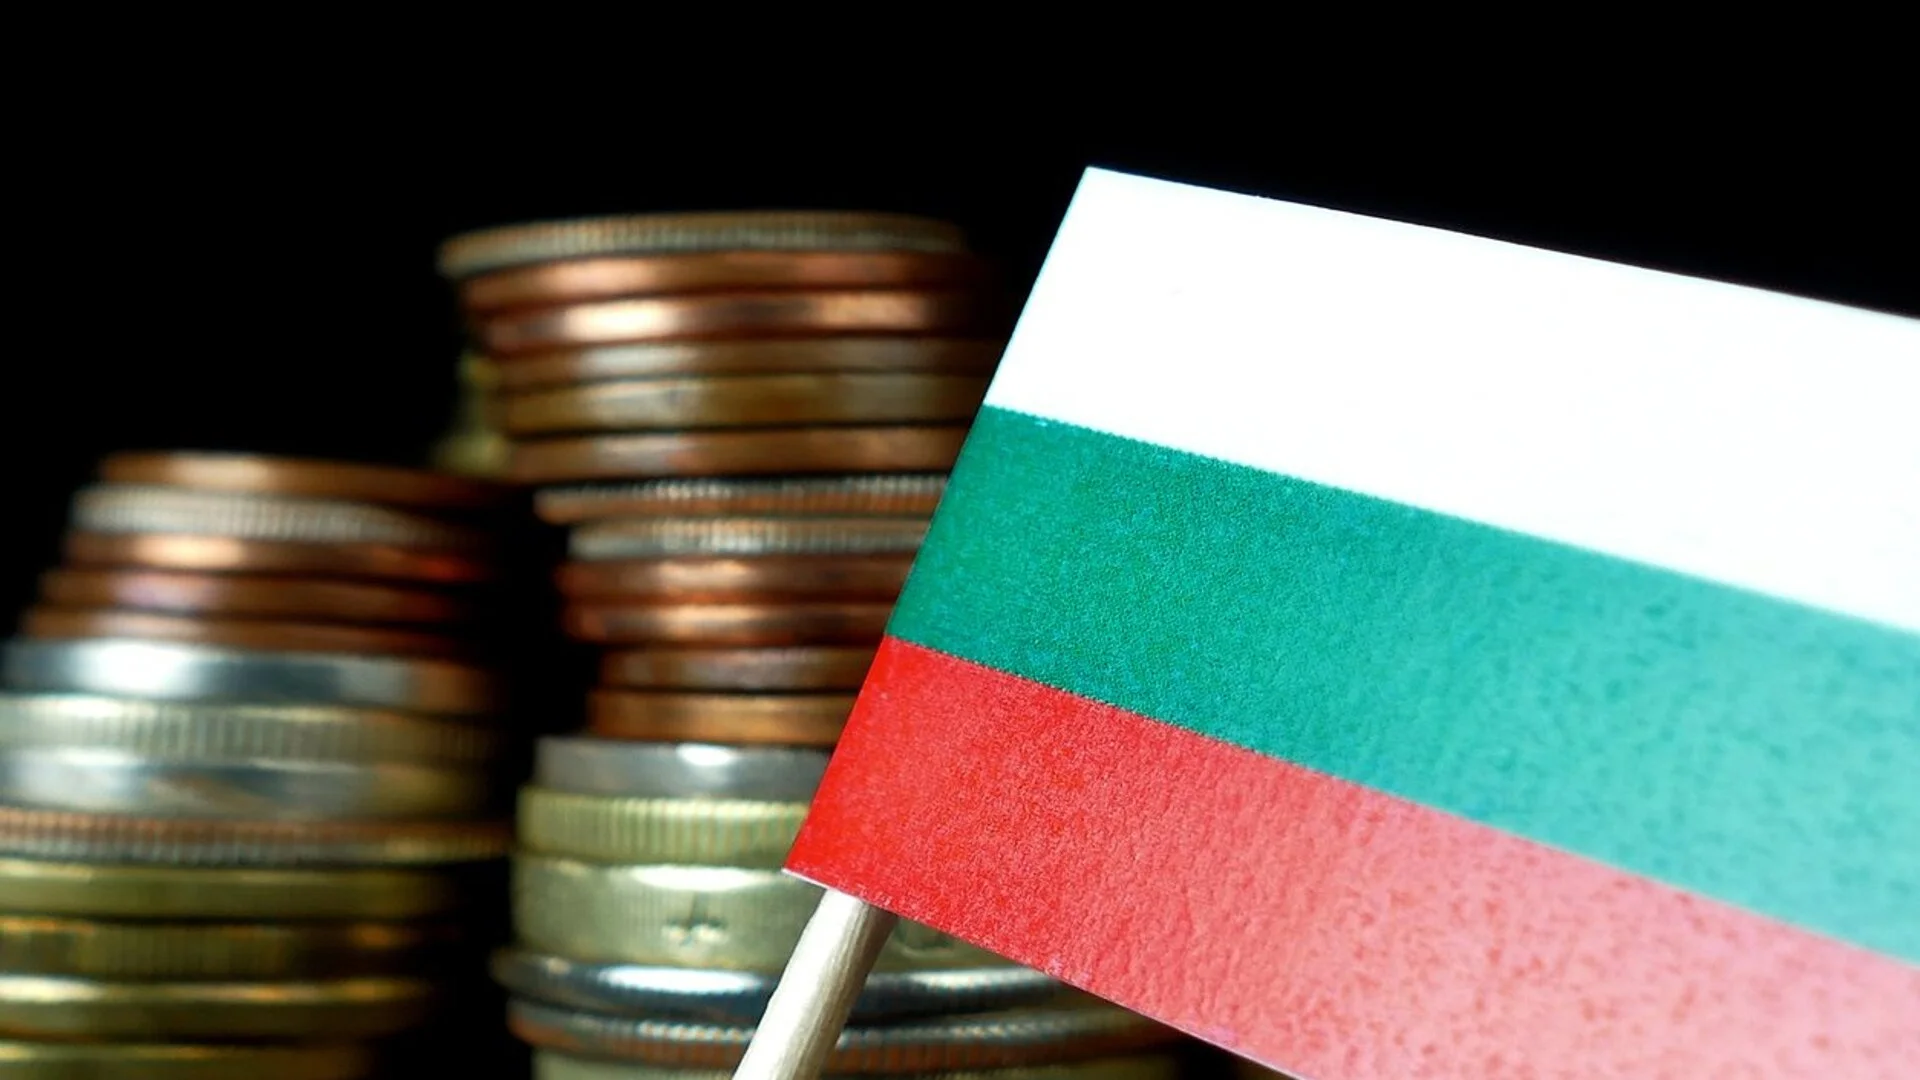 ЕБВР посочи основните рискове пред българската икономика